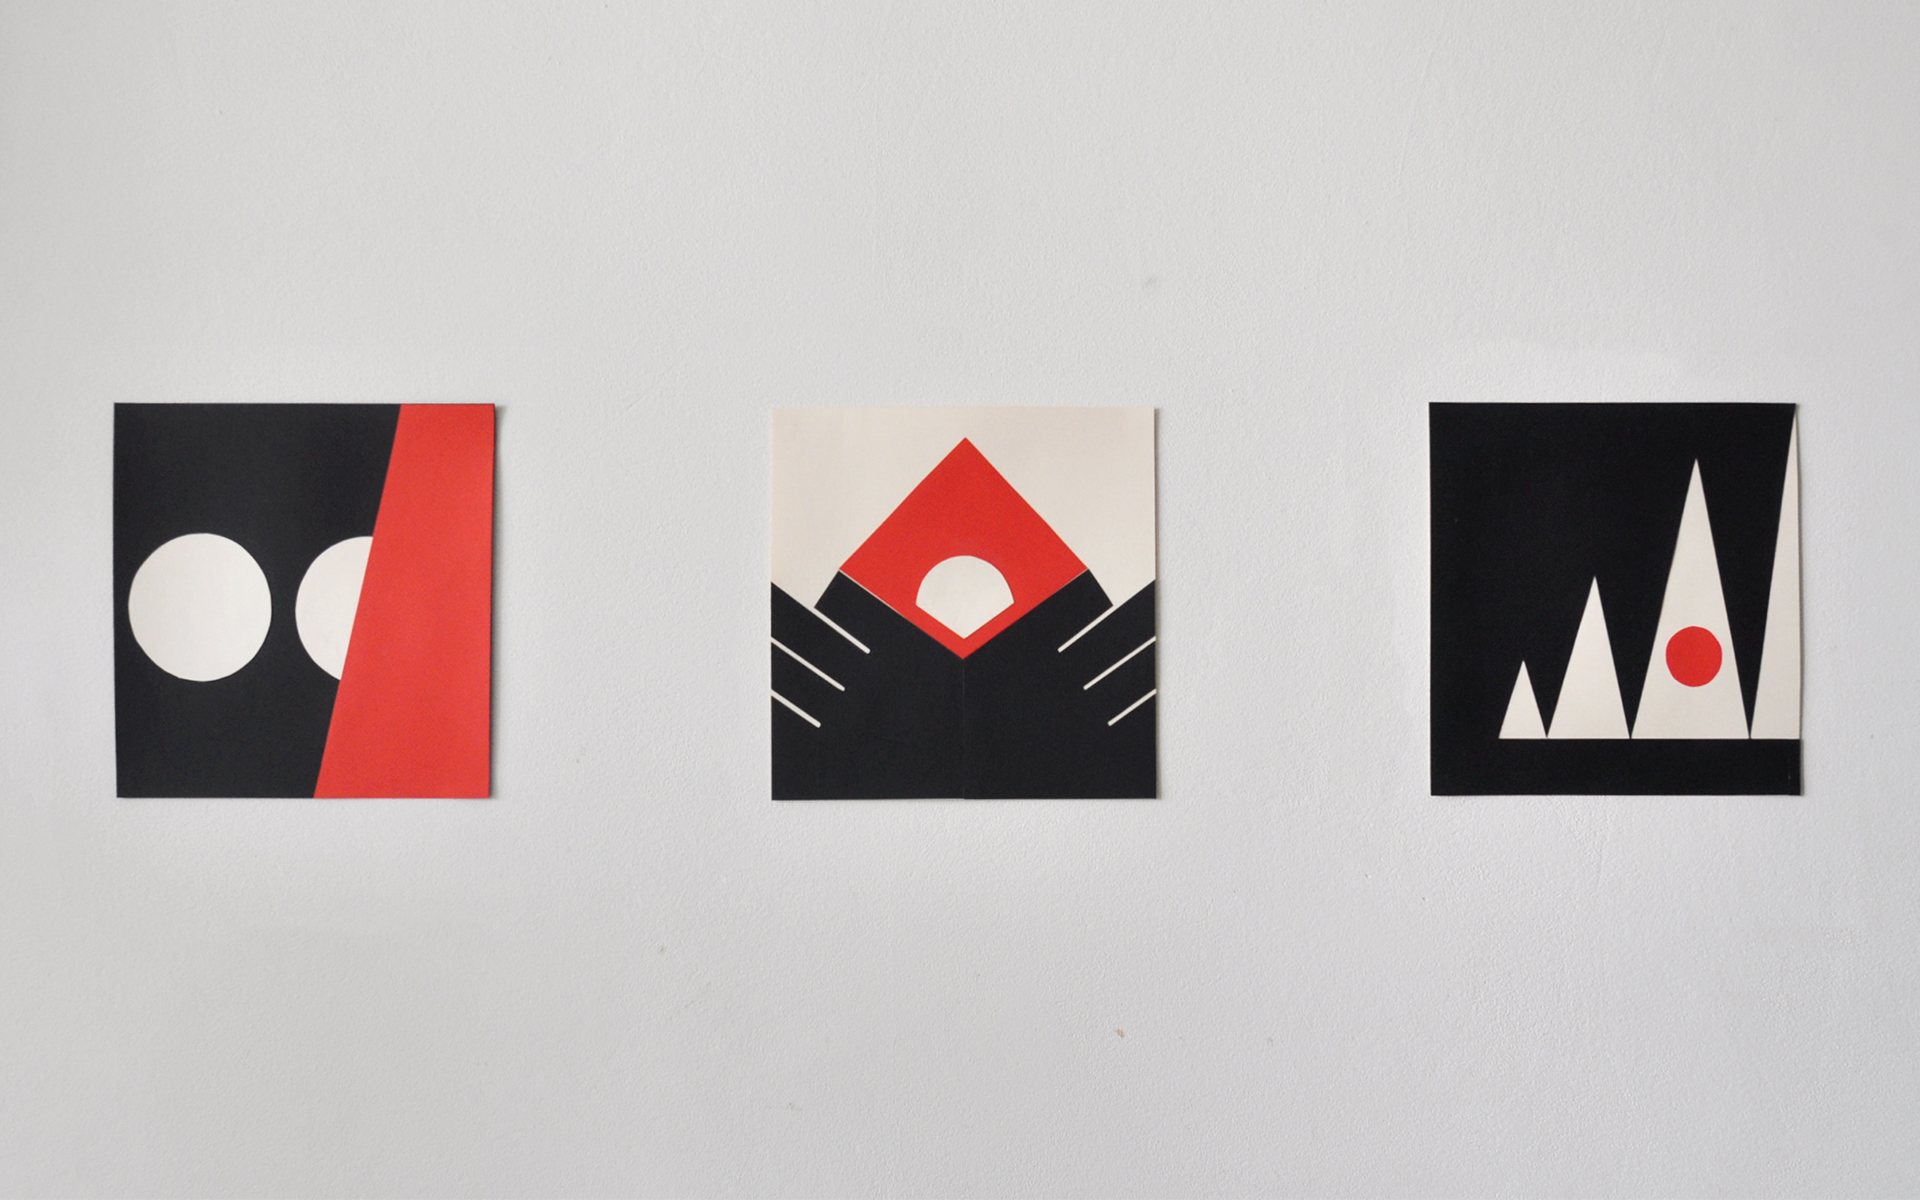 Grafika zawiera 3 kompozycje wpisane w kwadrat, proste kształty - kolor czarny, czerwony, biel cynkowa. 